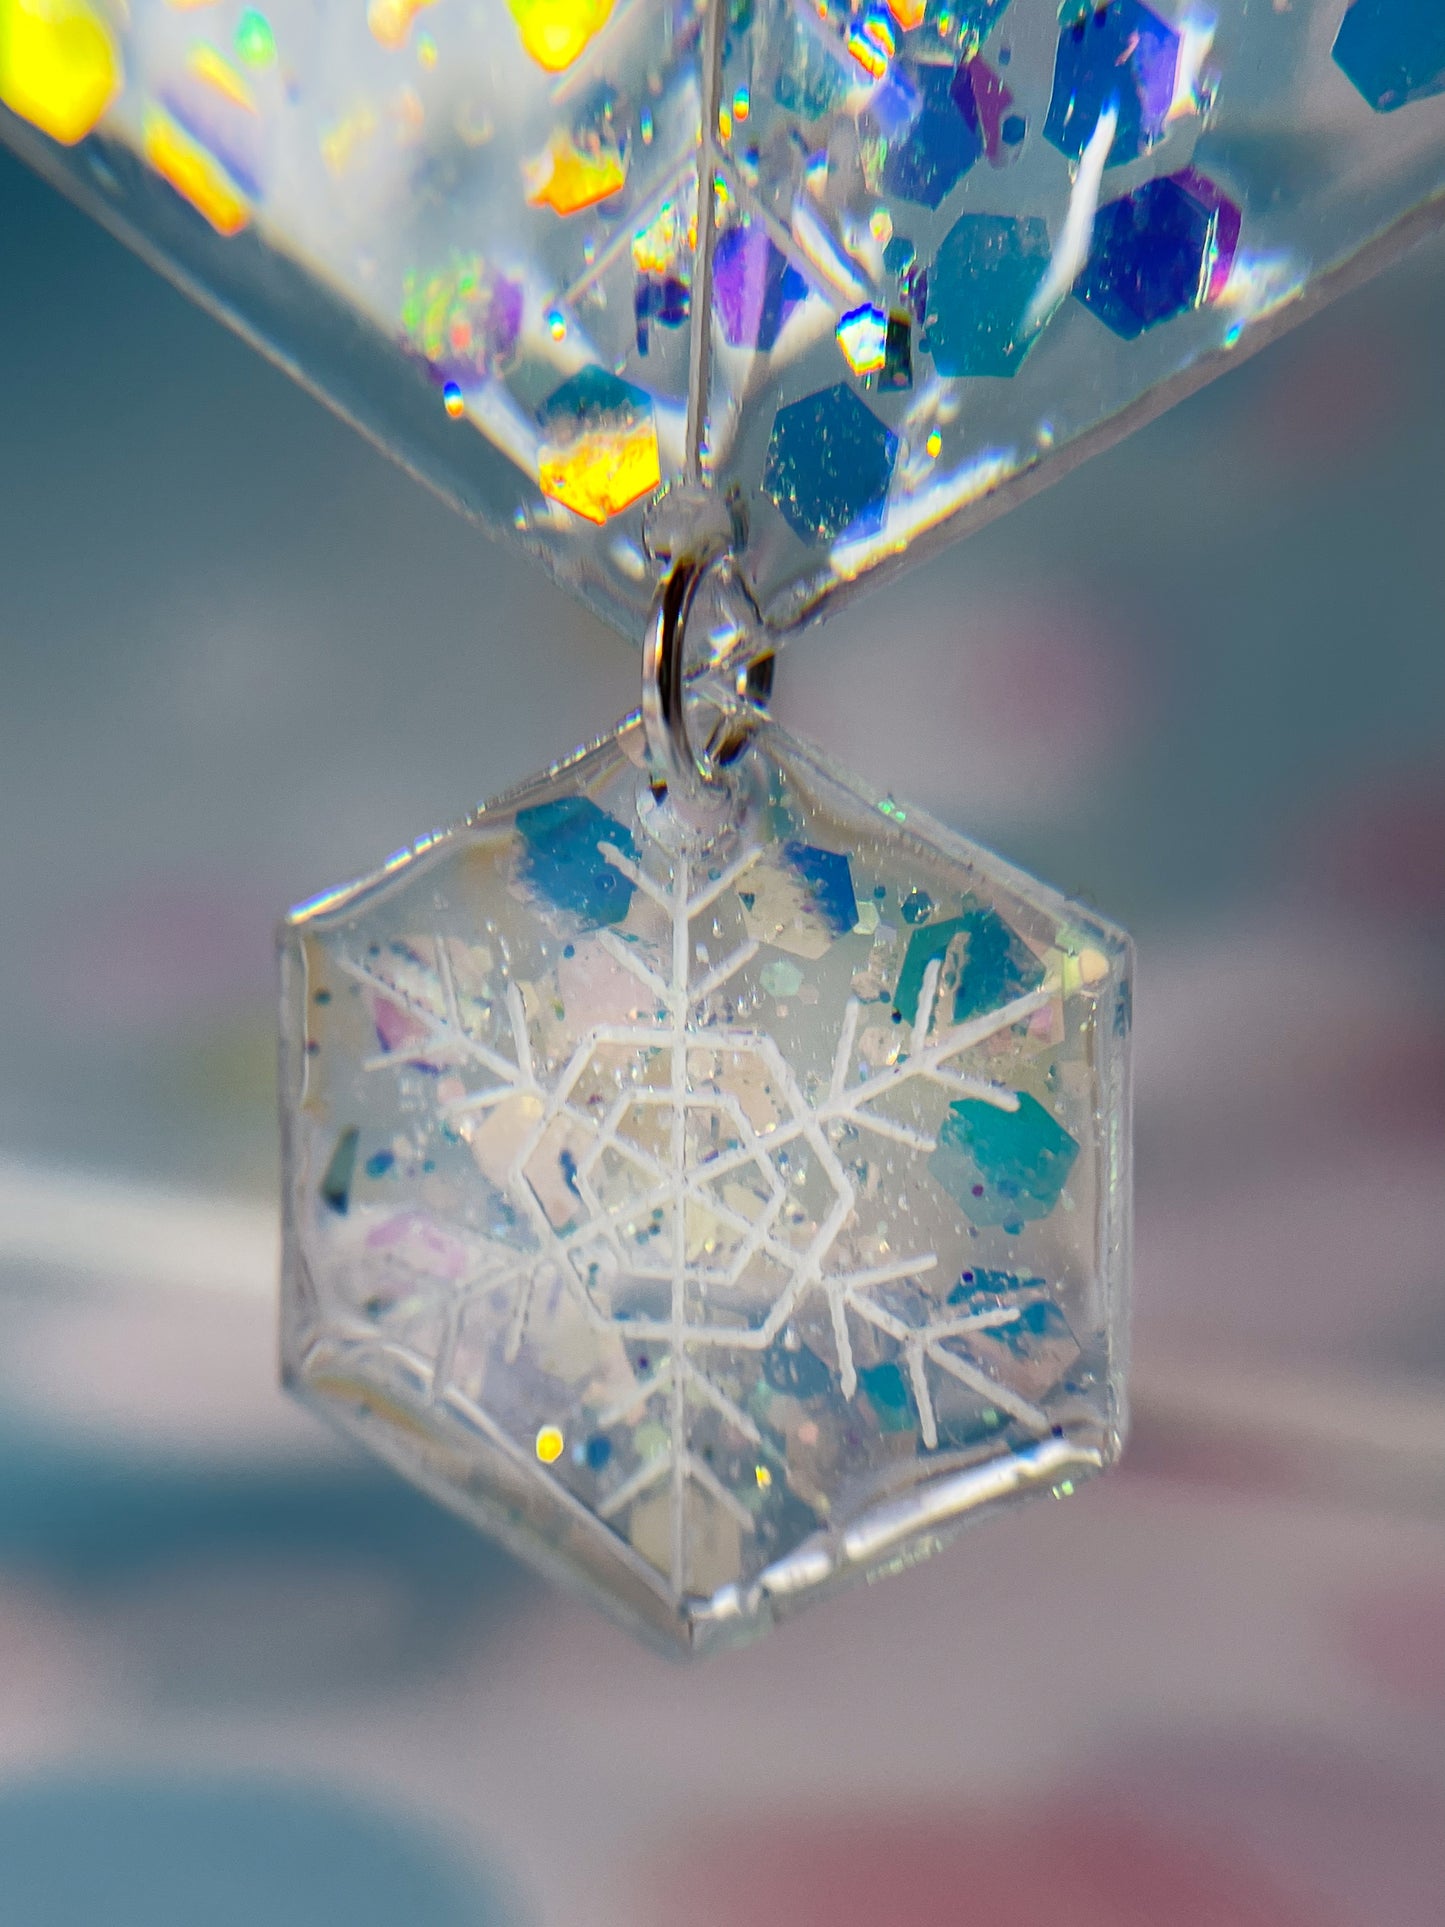 Snowflake drop earrings